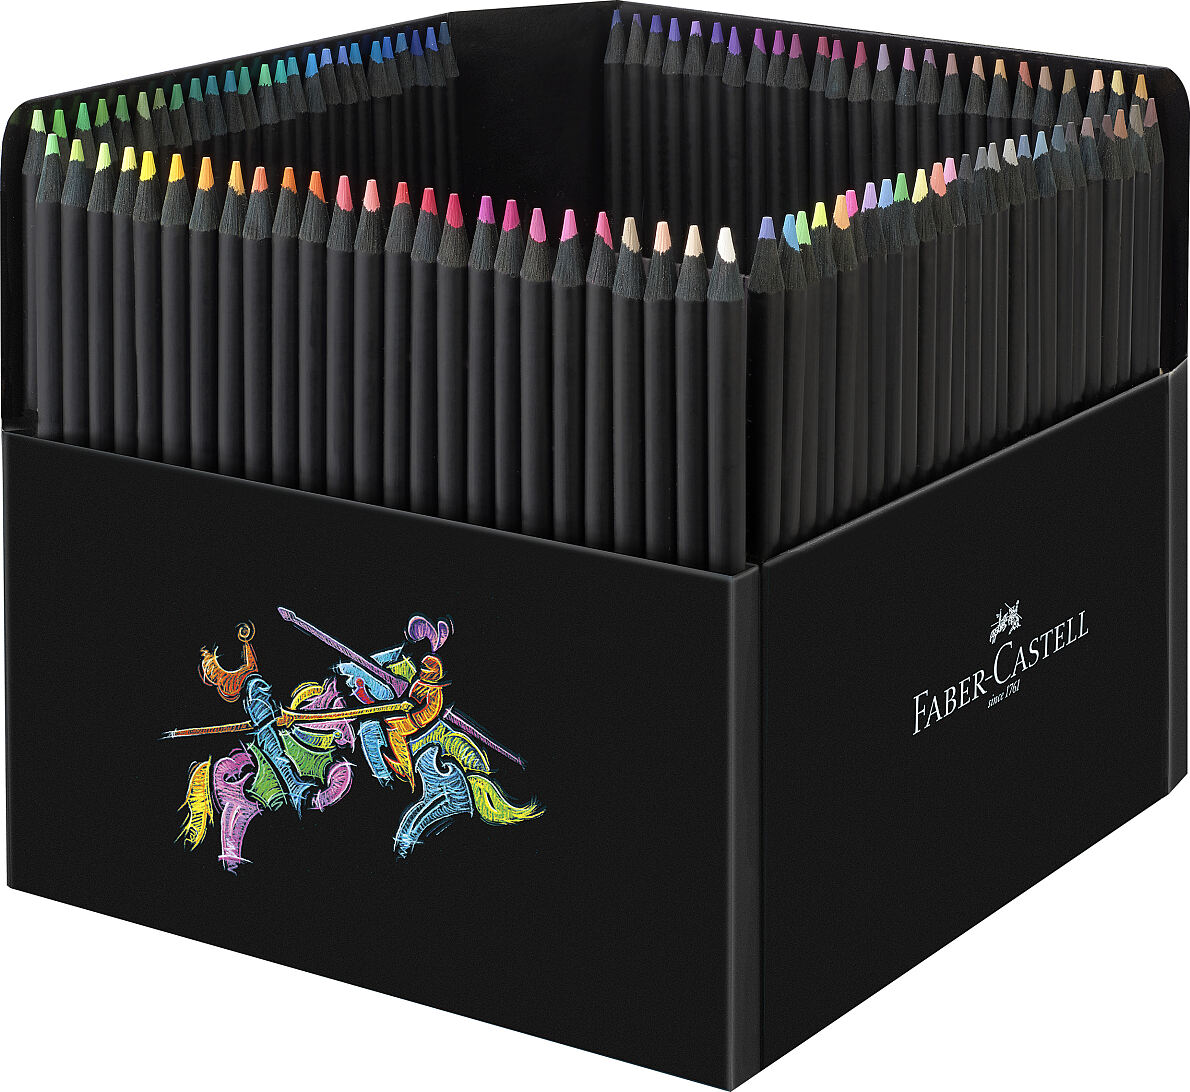 Faber-Castell_Col. pencils Black Edition 100er_EUR 55,00 (2)